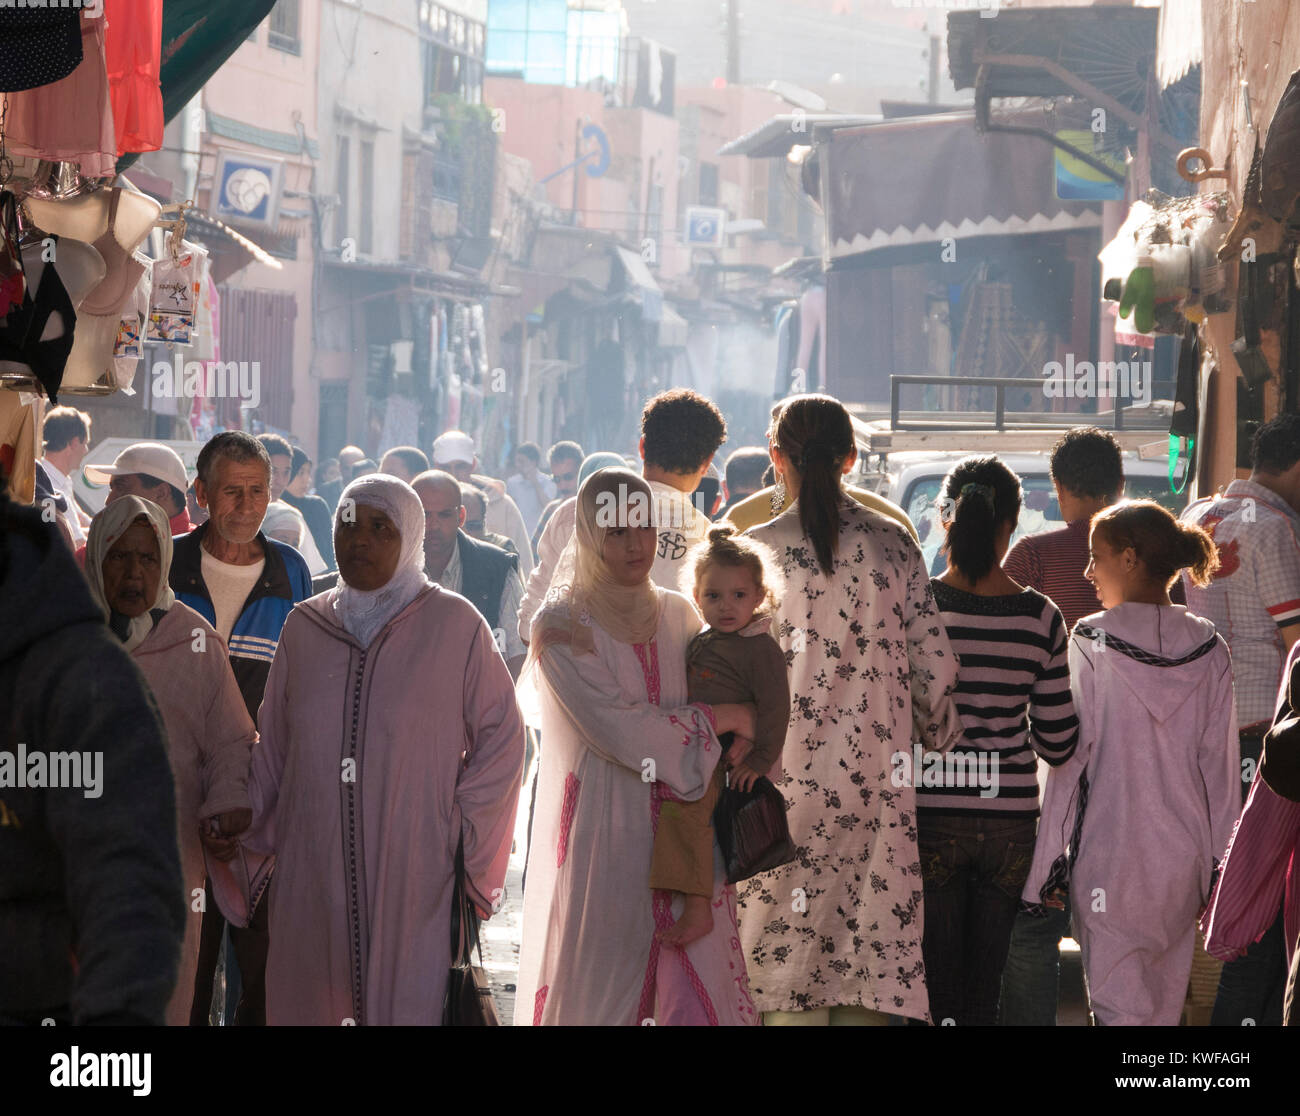 El pueblo marroquí en el souk (mercado) Foto de stock